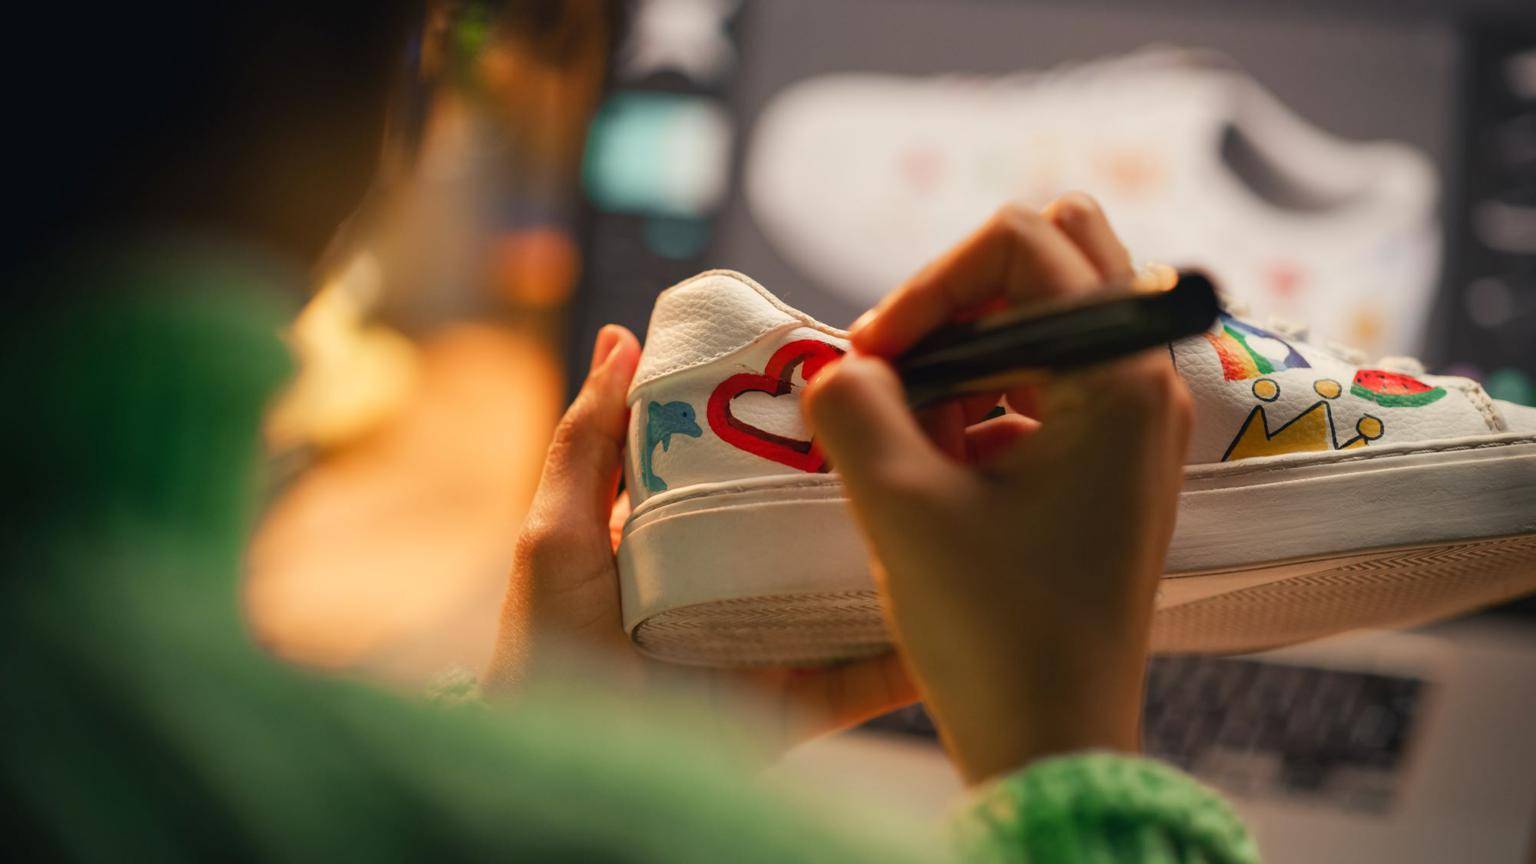 Vous pouvez acheter une paire de sneakers customisée par un artiste ou personnaliser vous-même vos baskets pour les rendre uniques. ( crédit photo : Shutterstock )